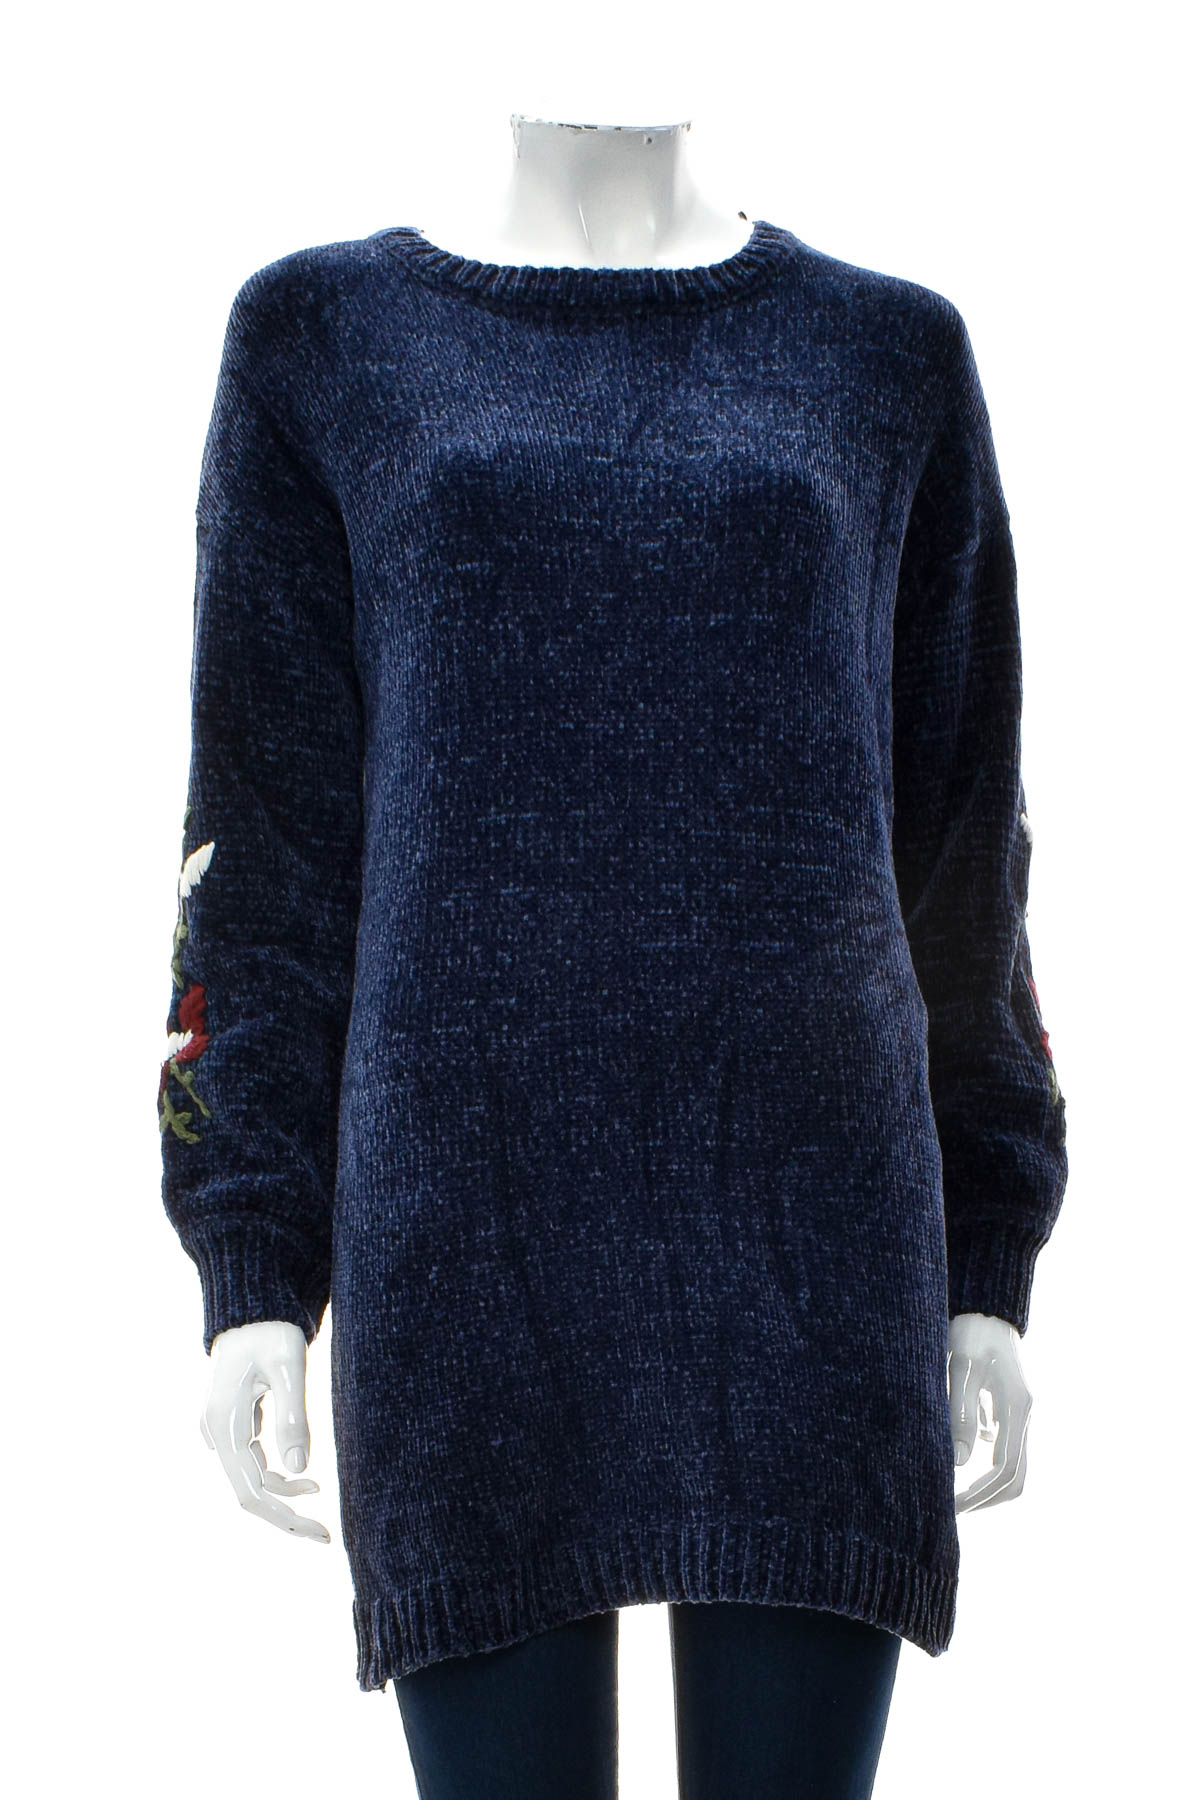 Women's sweater - Alya - 0